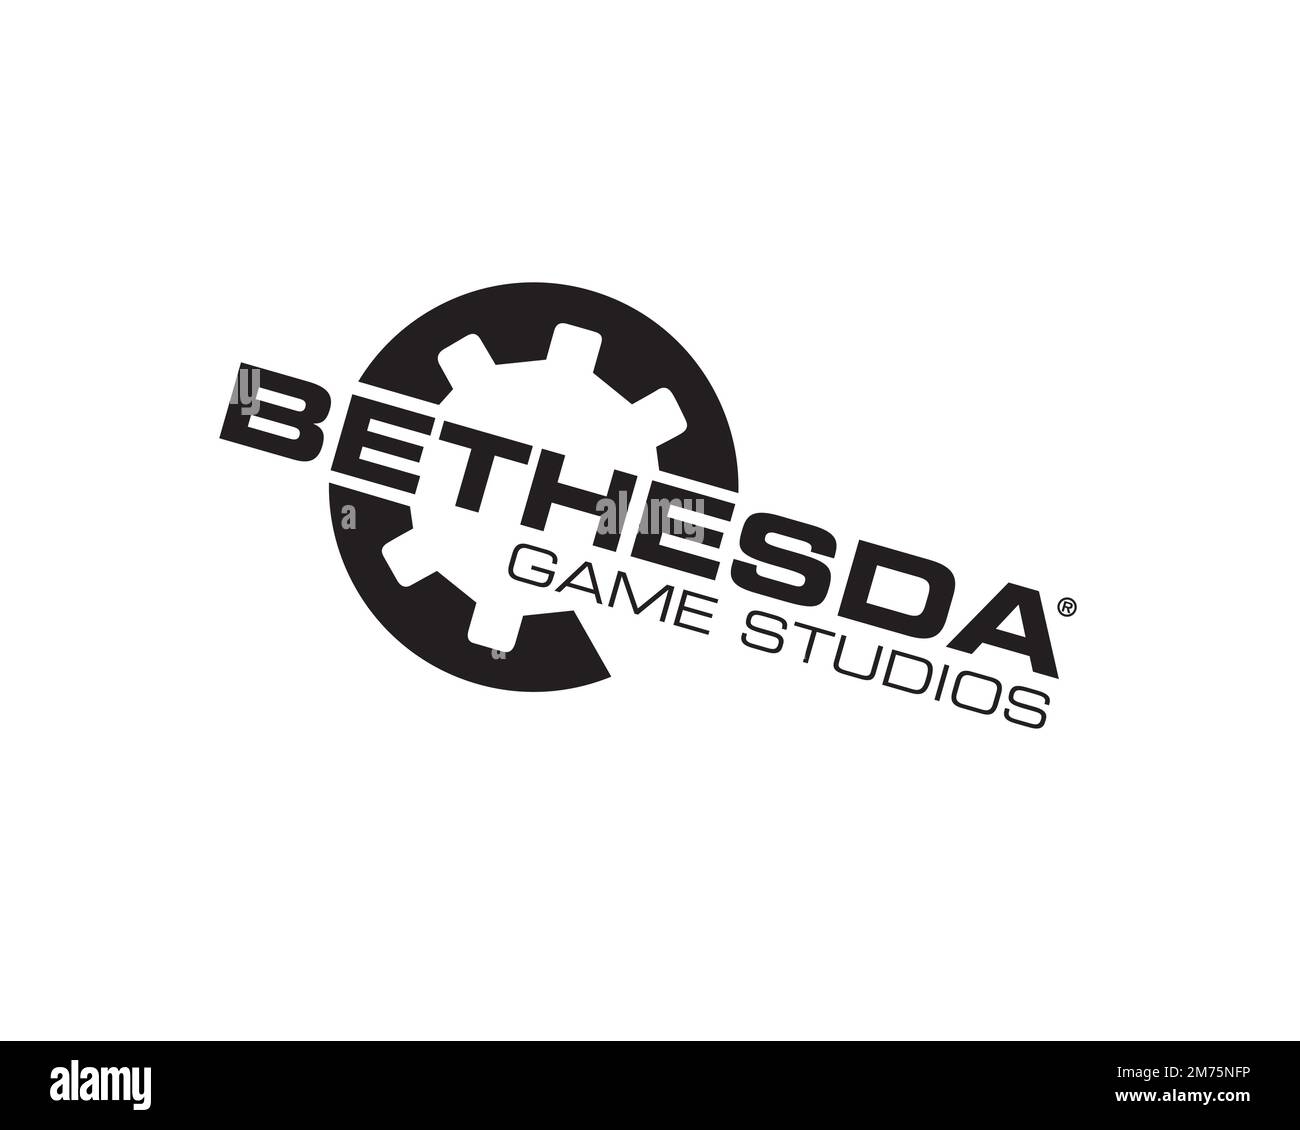 Bethesda Game Studios, logo ruotato, sfondo bianco B Foto Stock